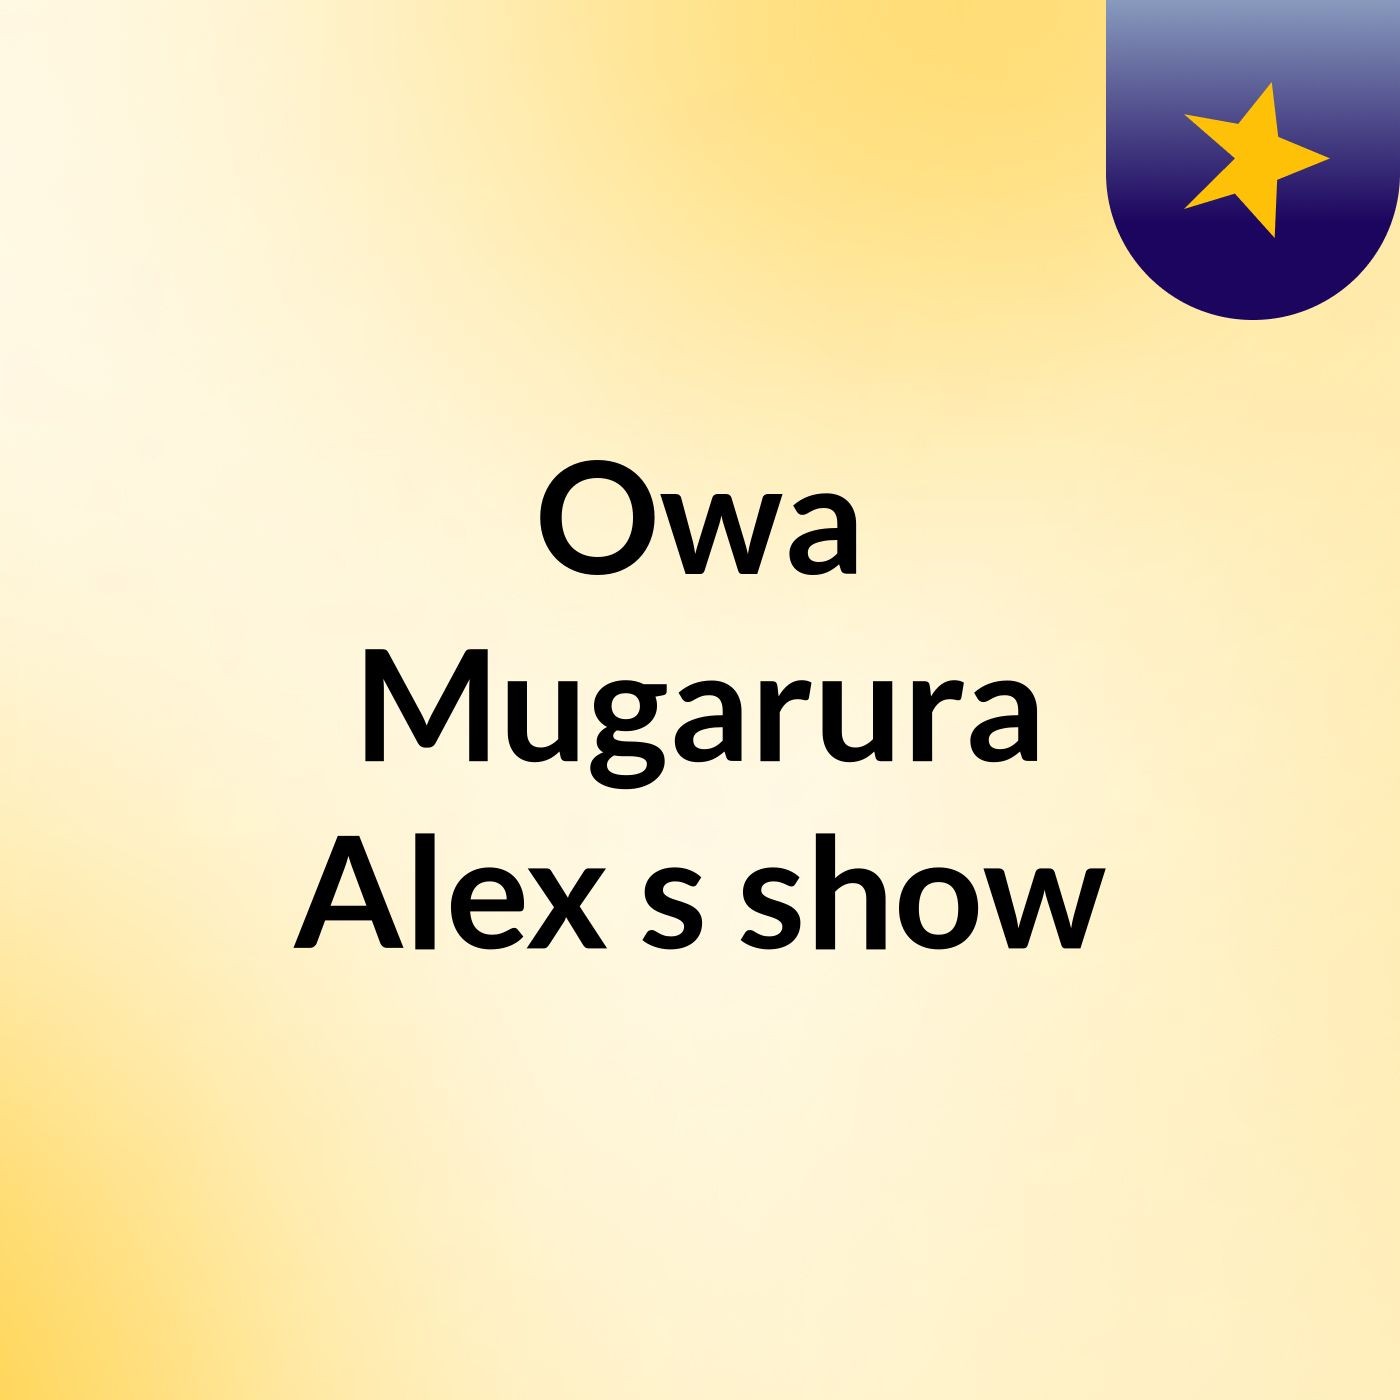 Episode 2 - Owa Mugarura Alex's show